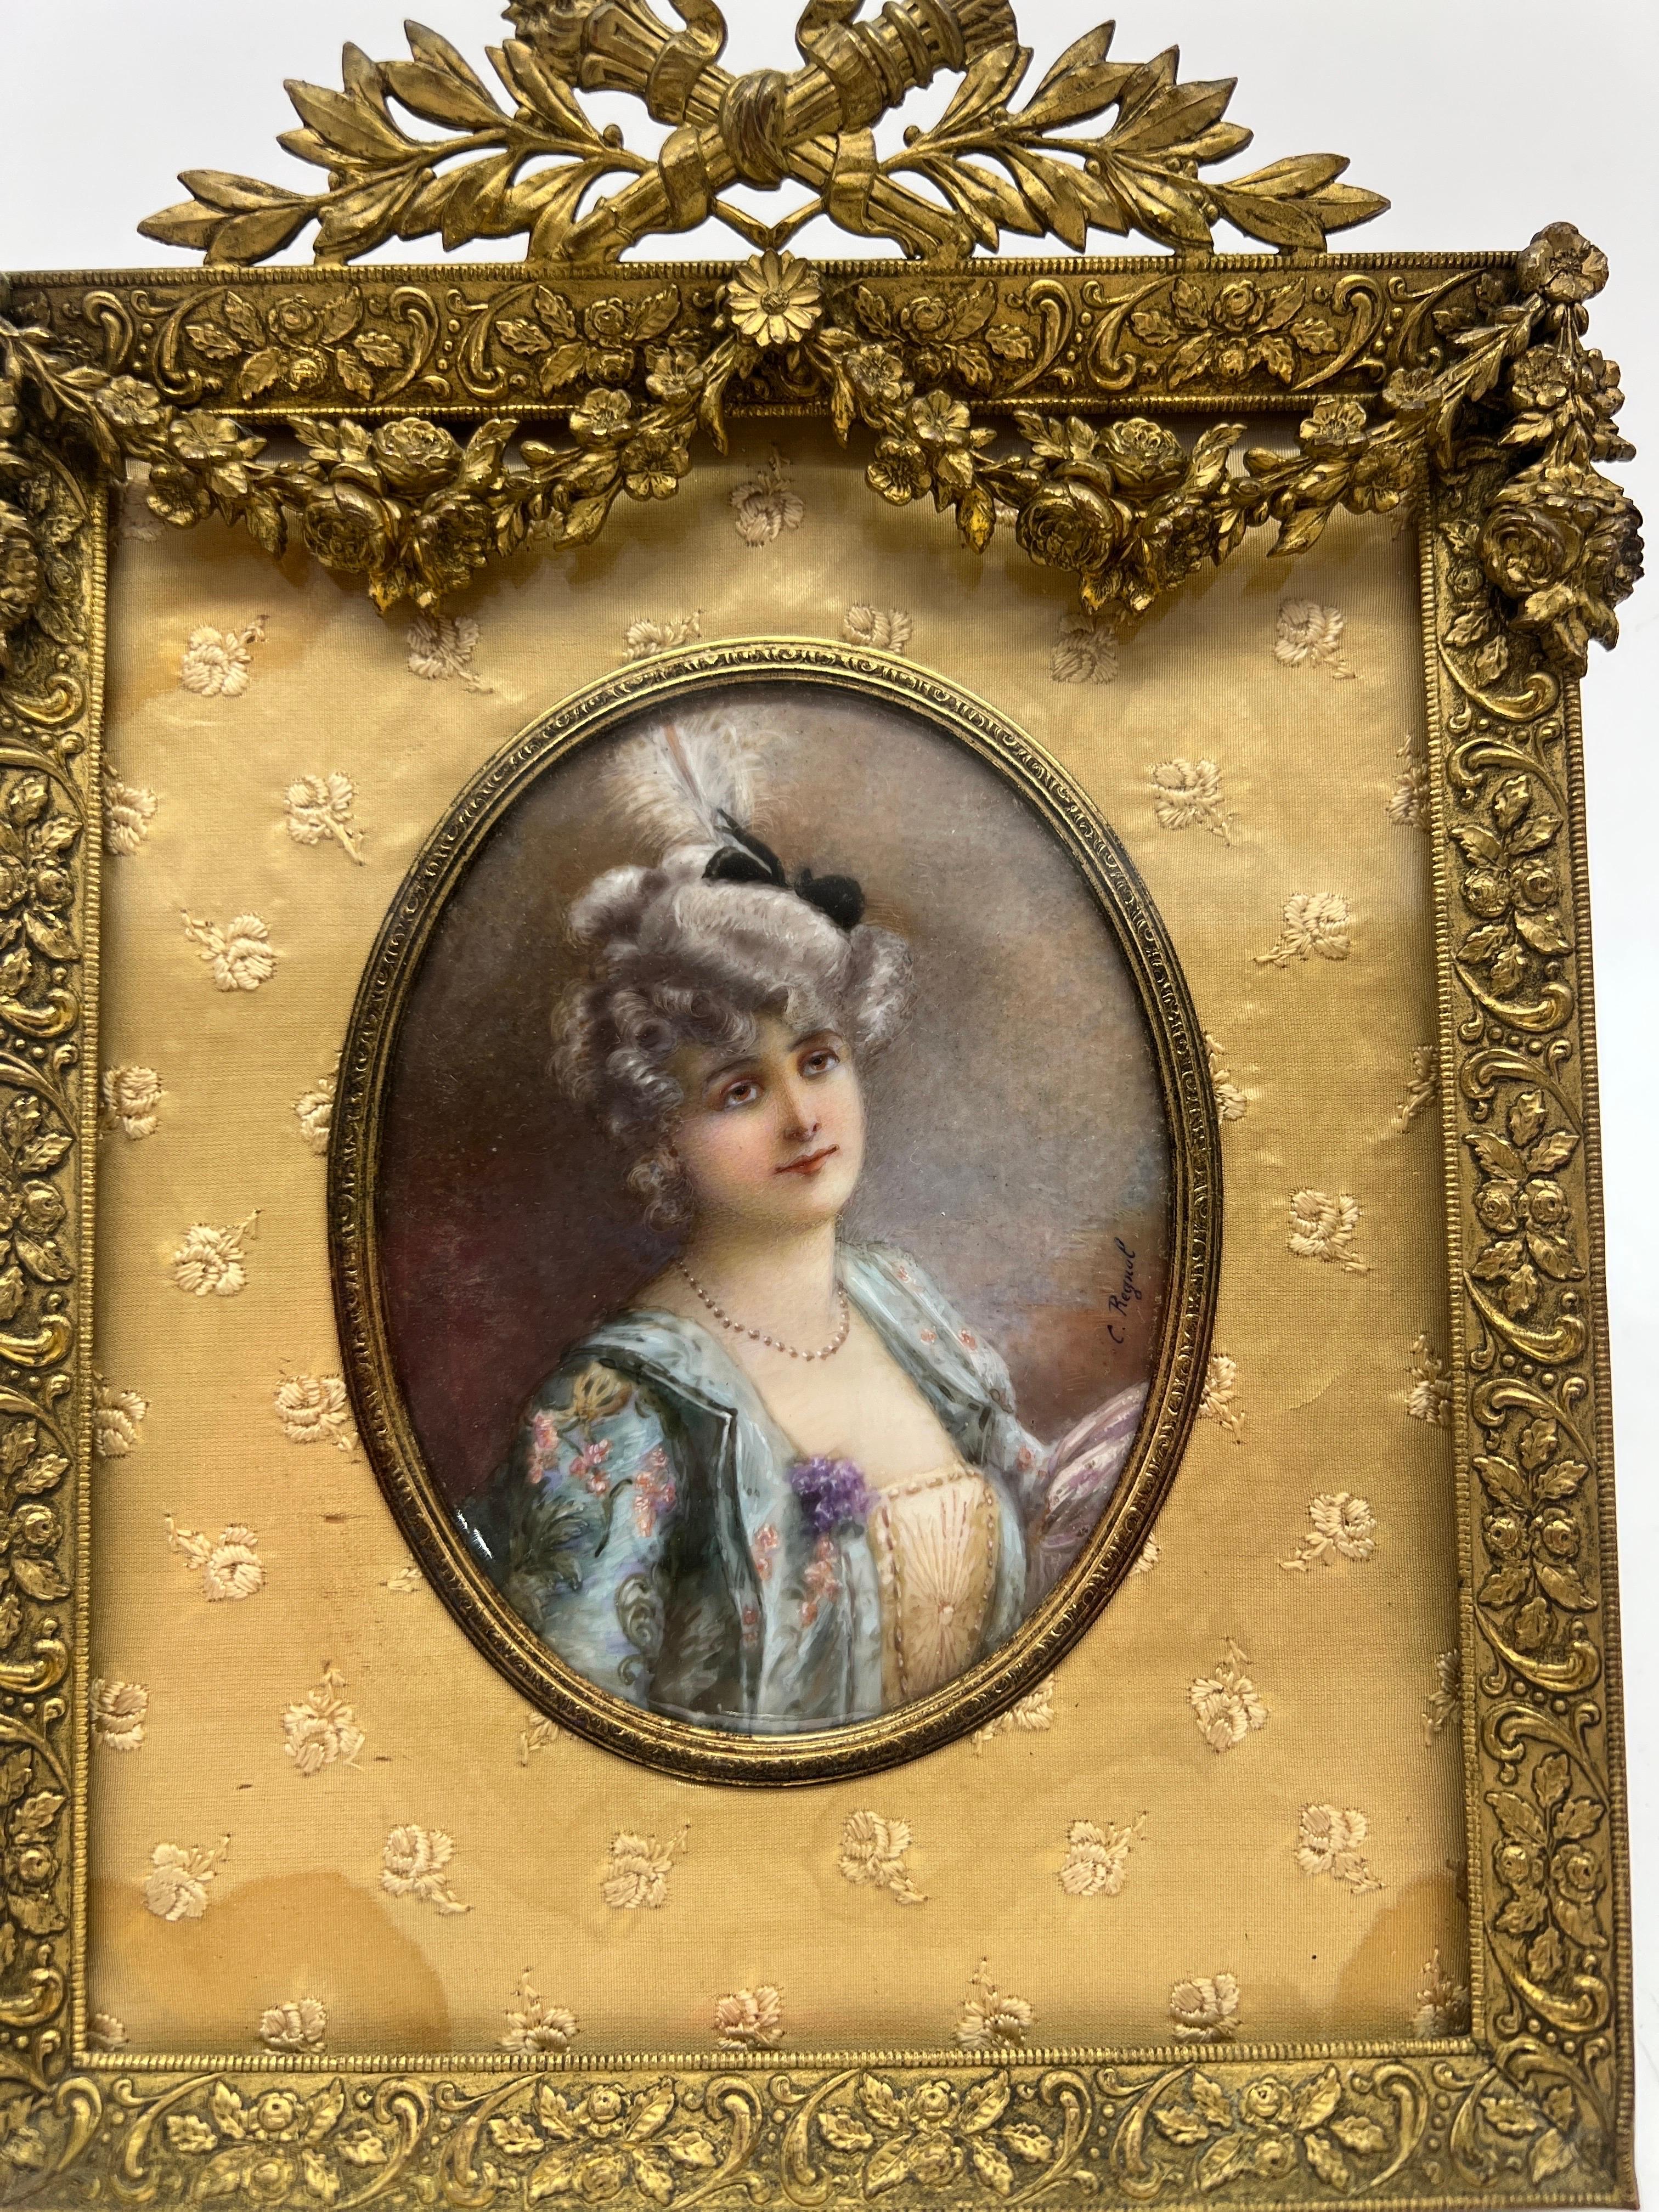 Französisch, 19. Jahrhundert.

Eine feine Qualität 19. Jahrhundert Französisch Miniaturmalerei der schönen Dame. Das ovale Gemälde befindet sich unter einem gewölbten Glasschild, ist von zarter, mit Blumen bestickter Seide umgeben und vollständig in